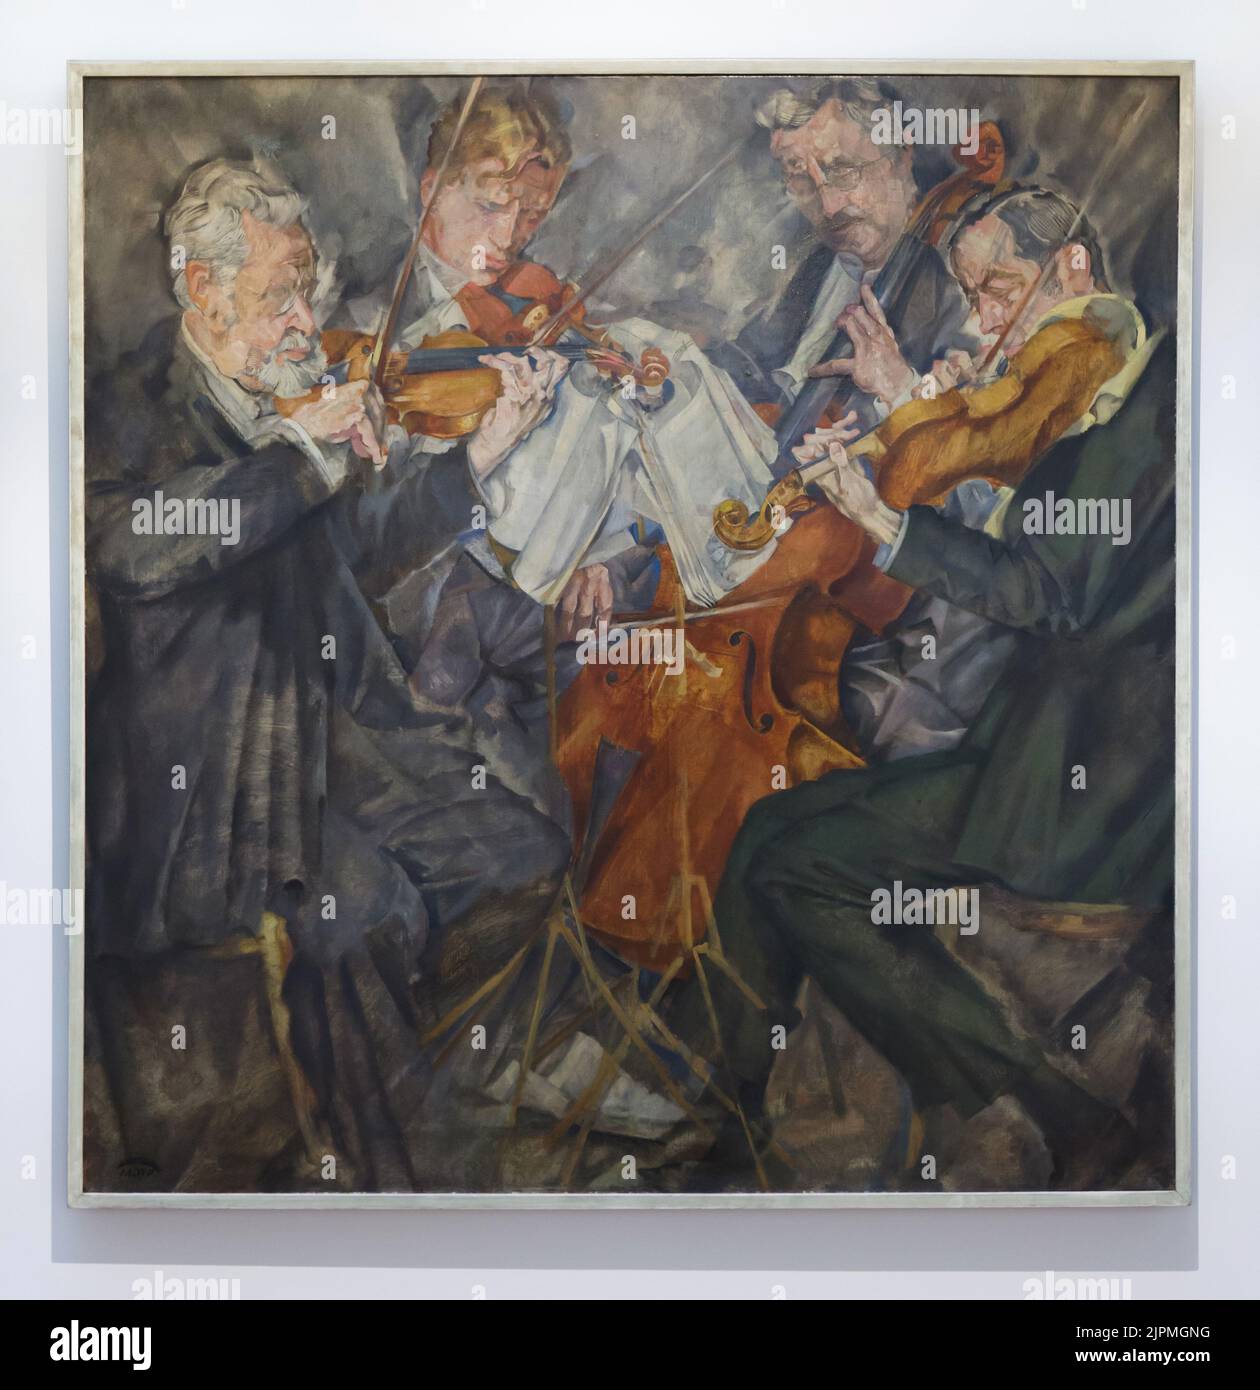 Peinture 'Rosé Quartet' par le peintre expressionniste allemand Max Oppenheimer (1924) sur disрlау dans le Gеrmаnisсhе Nаtiоnаlmusеum (Musée allemand de Nаtiоnаl) à Nürnbenedrg, Allemagne. Les musiciens roumains Arnold Rosé, Anton Ruzitska, Anton Walter et Paul Fischer sont représentés dans la peinture de gauche à droite. Banque D'Images